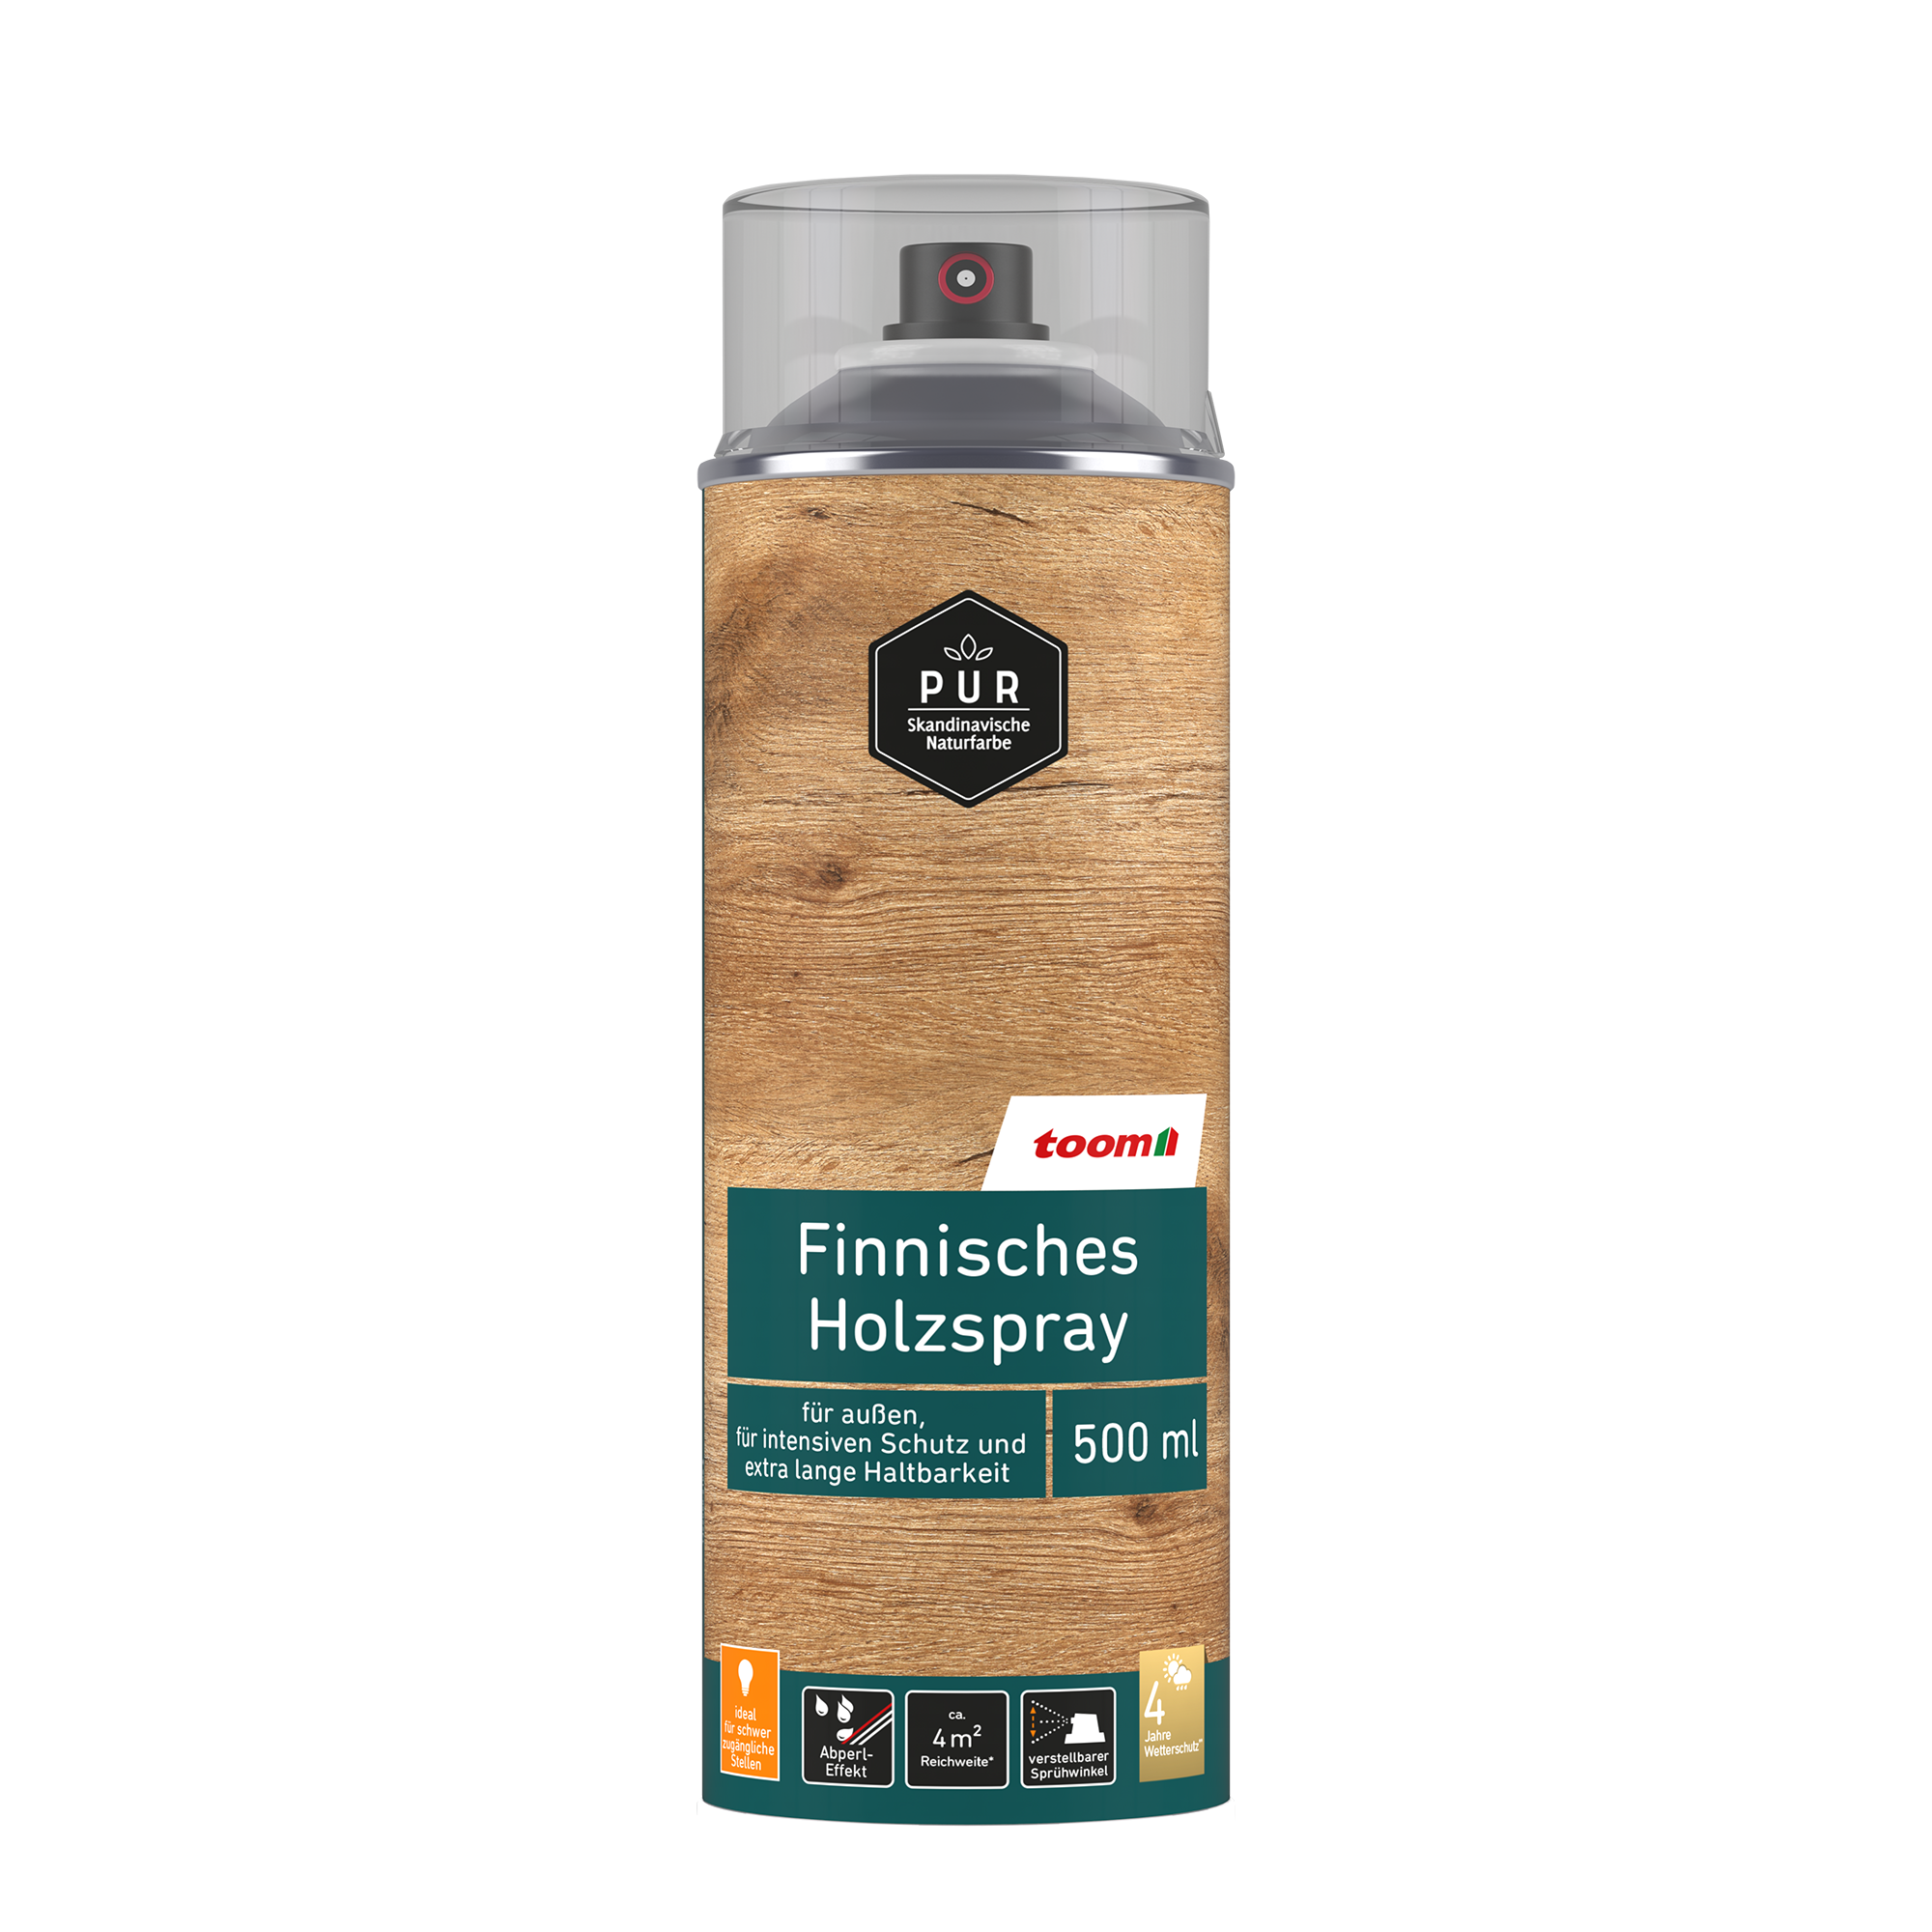 Finnisches Holzspray nussbaumfarben 500 ml + product picture